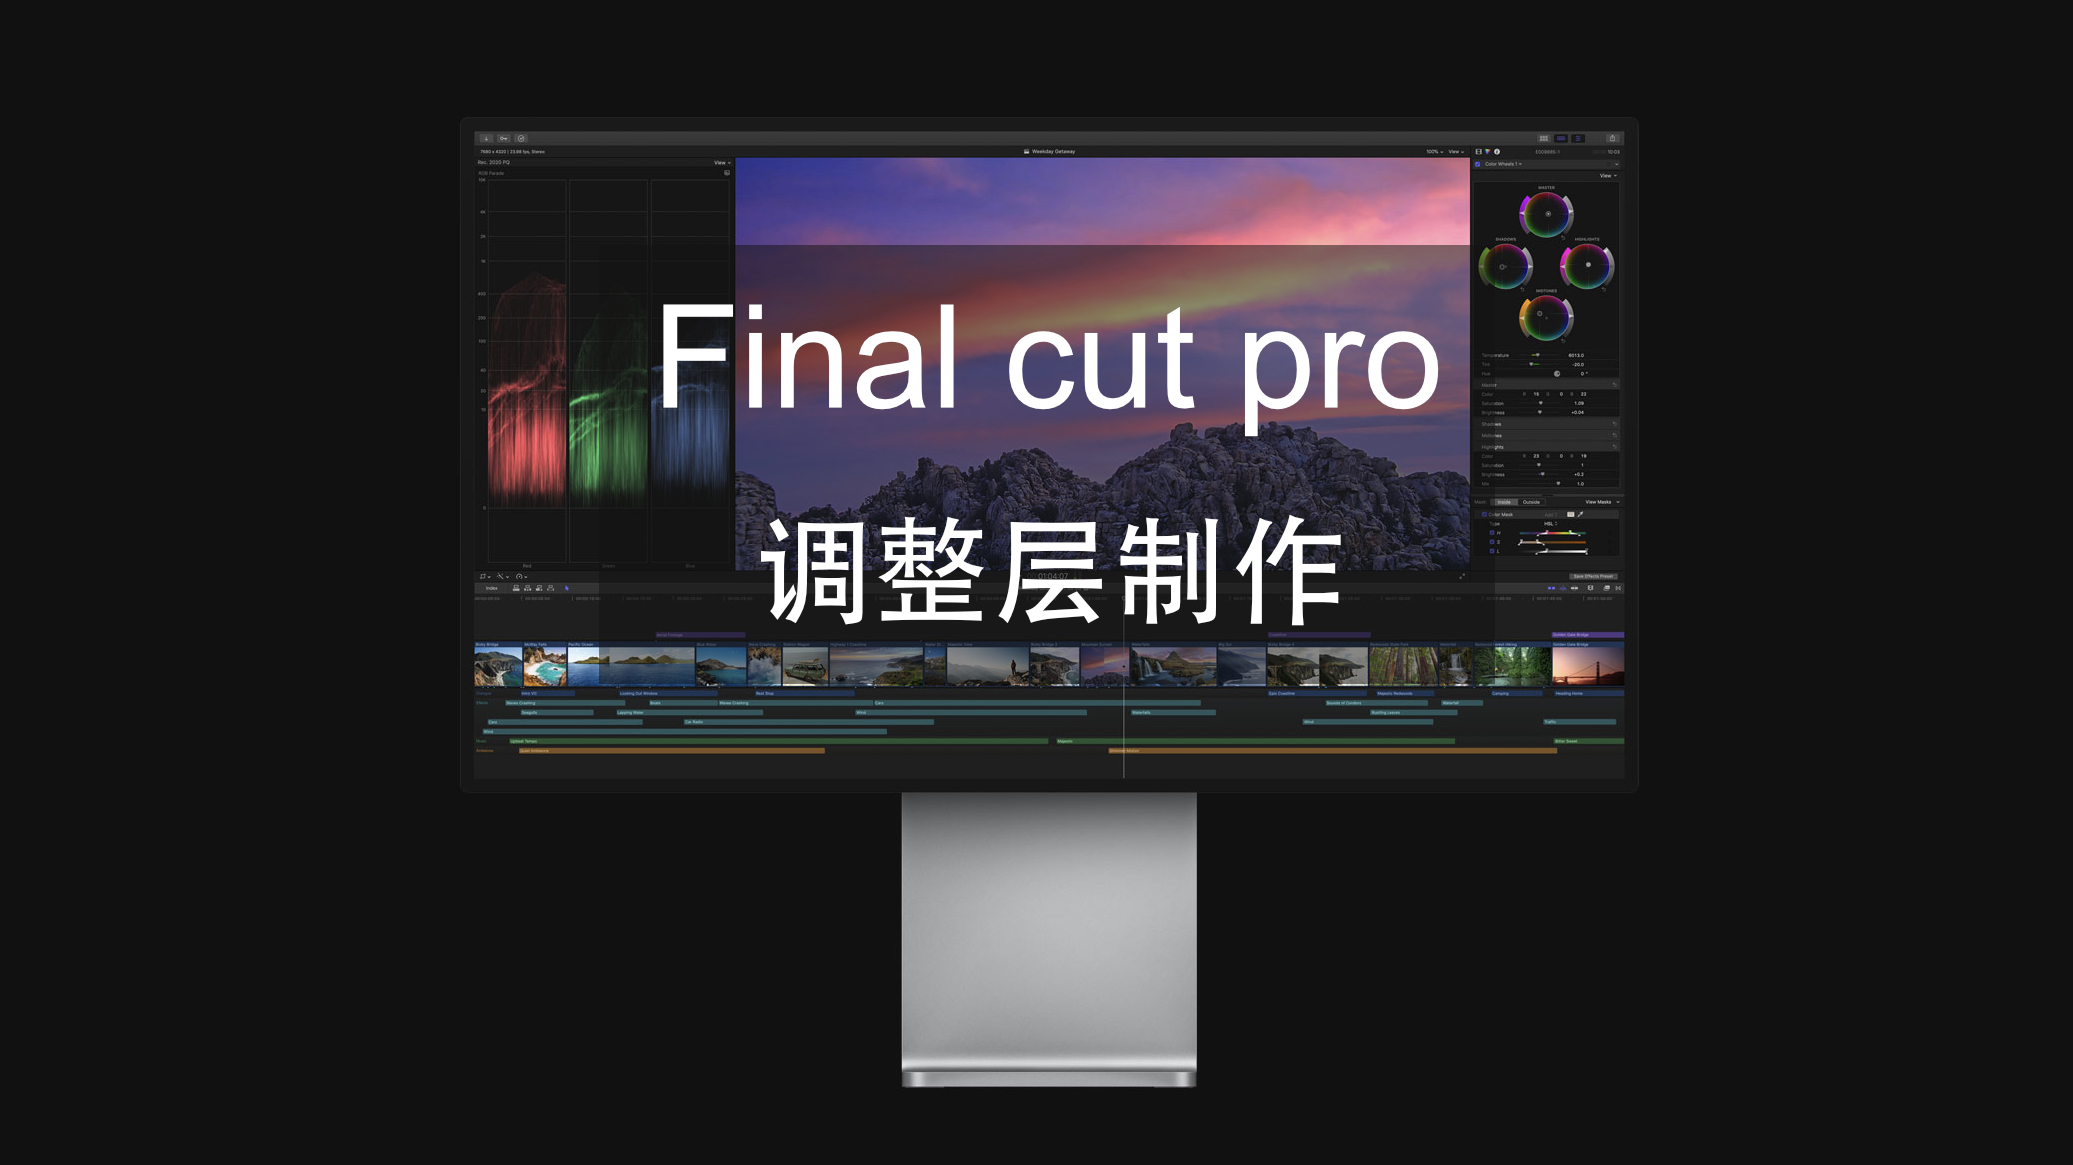 final cut pro最新破解版下载 苹果视频剪辑软件 v10.6.5 - 墨天轮